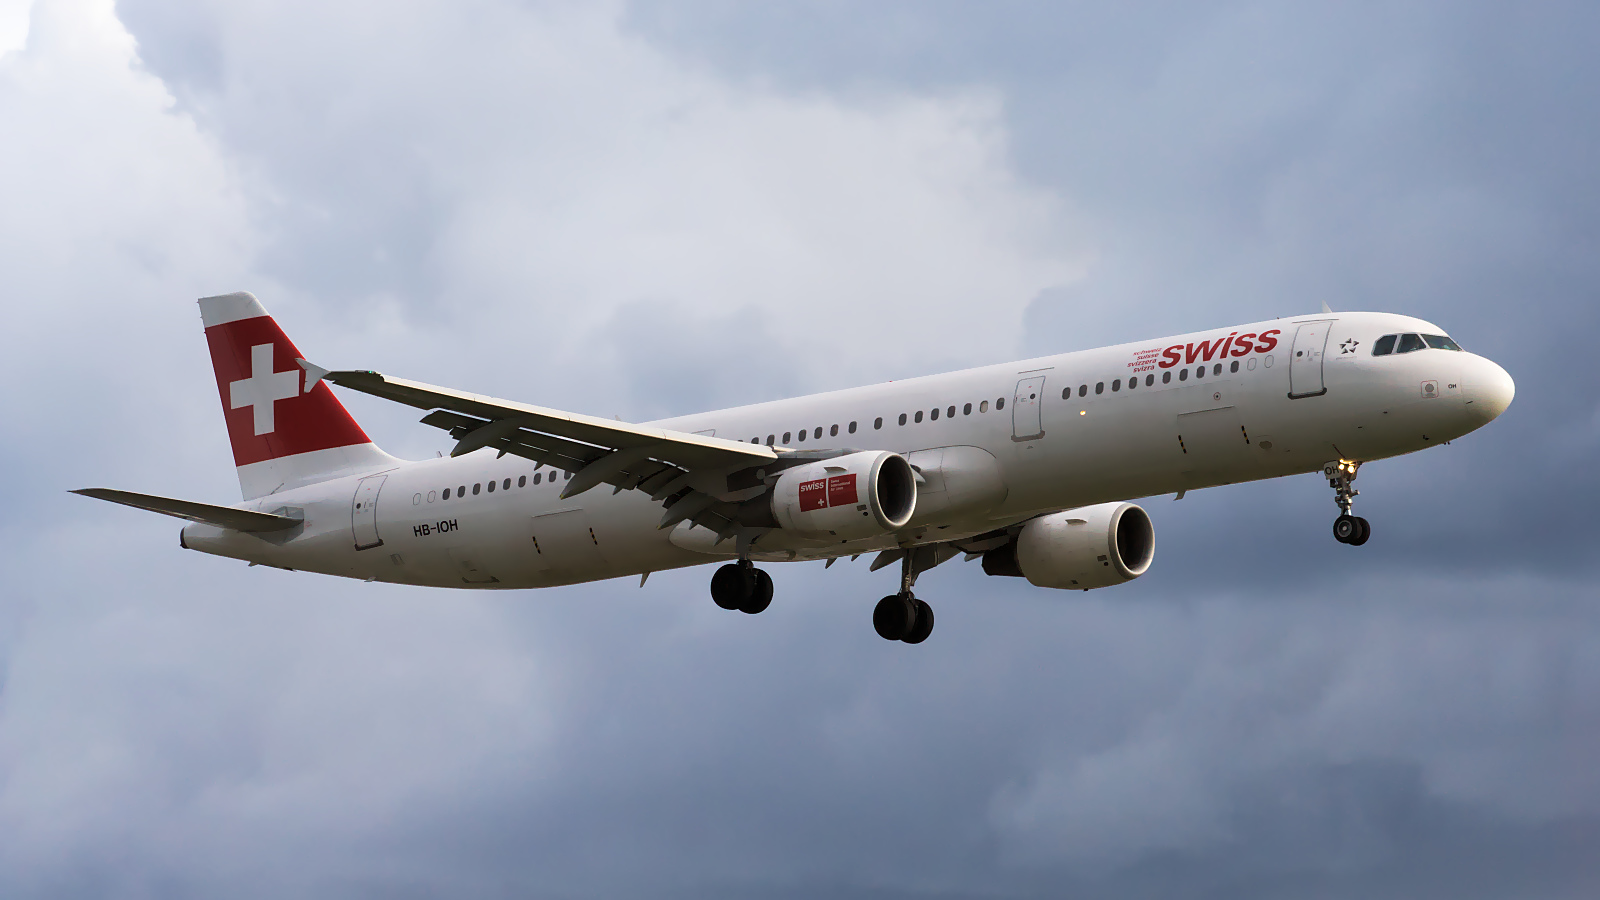 HB-IOH ✈ Swiss International Air Lines Airbus A321-131 @ London-Heathrow